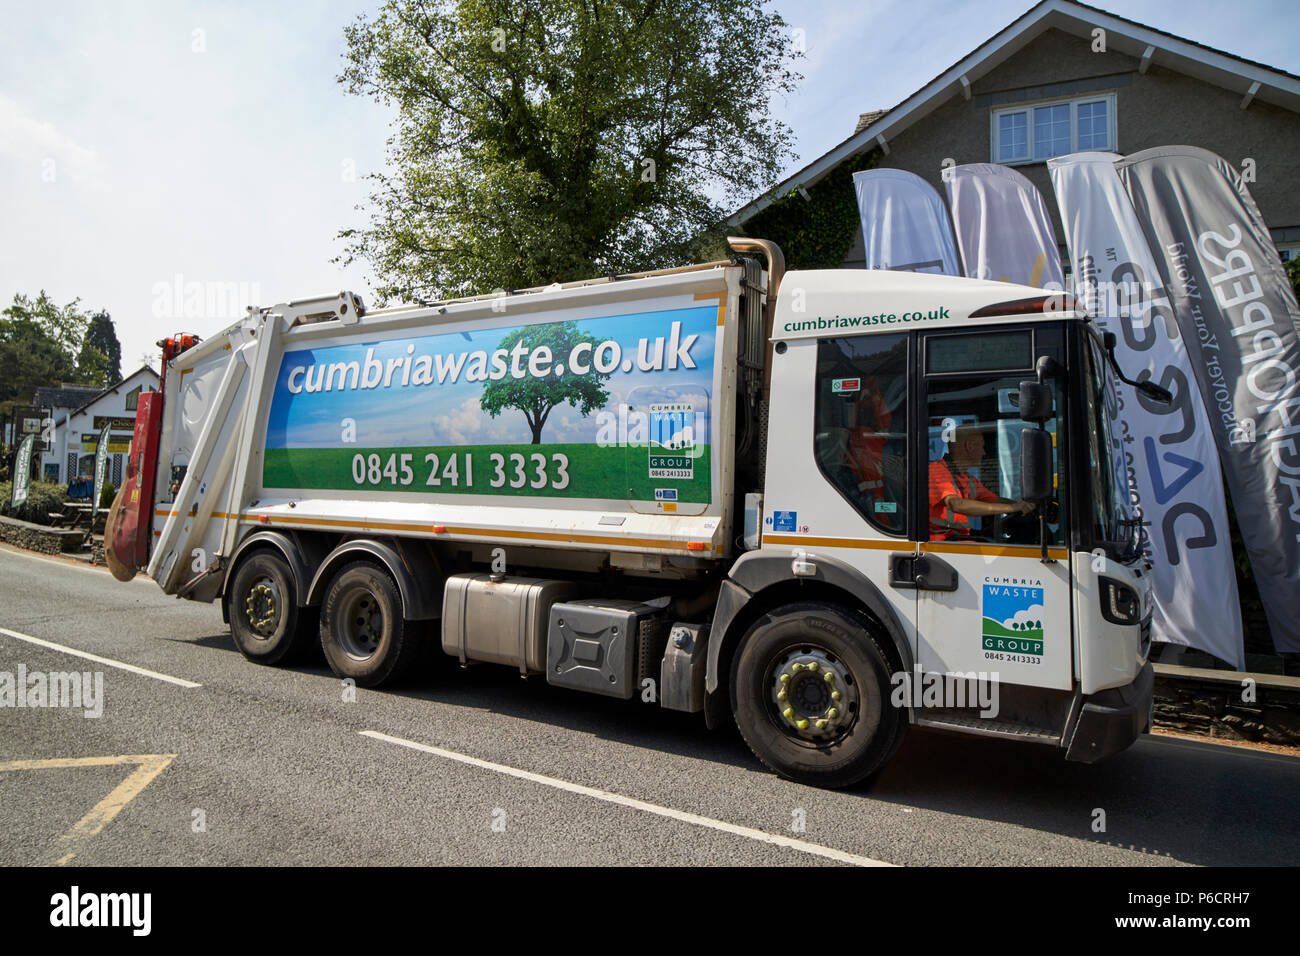 cumbria waste private company bin collection service in grasmere lake district cumbria england uk Stock Photo